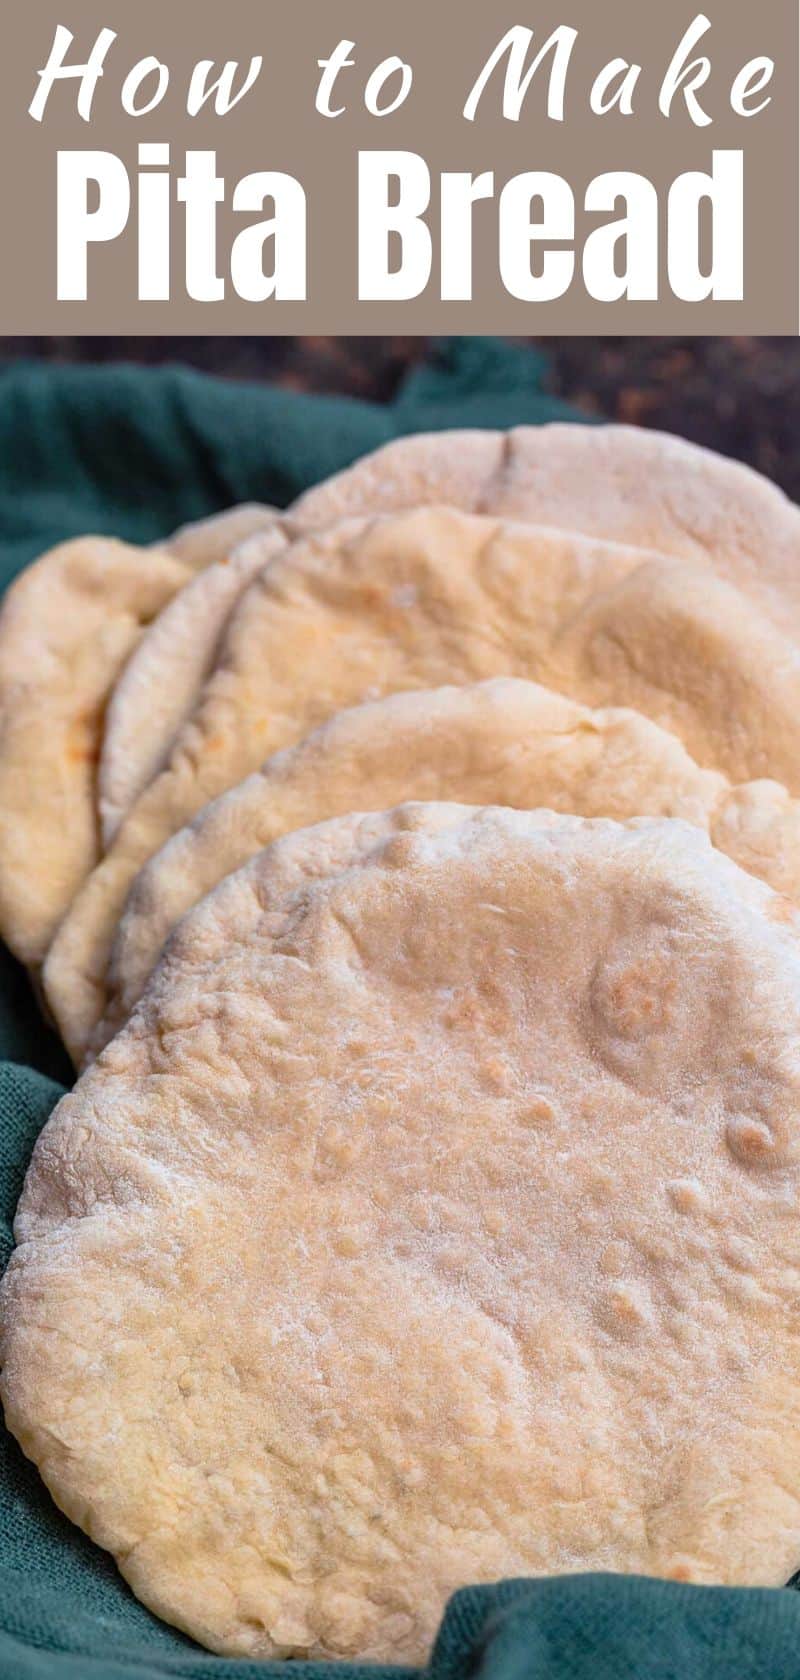 Easy Pita Bread Recipe (How to Make Pita Bread)| The Mediterranean Dish